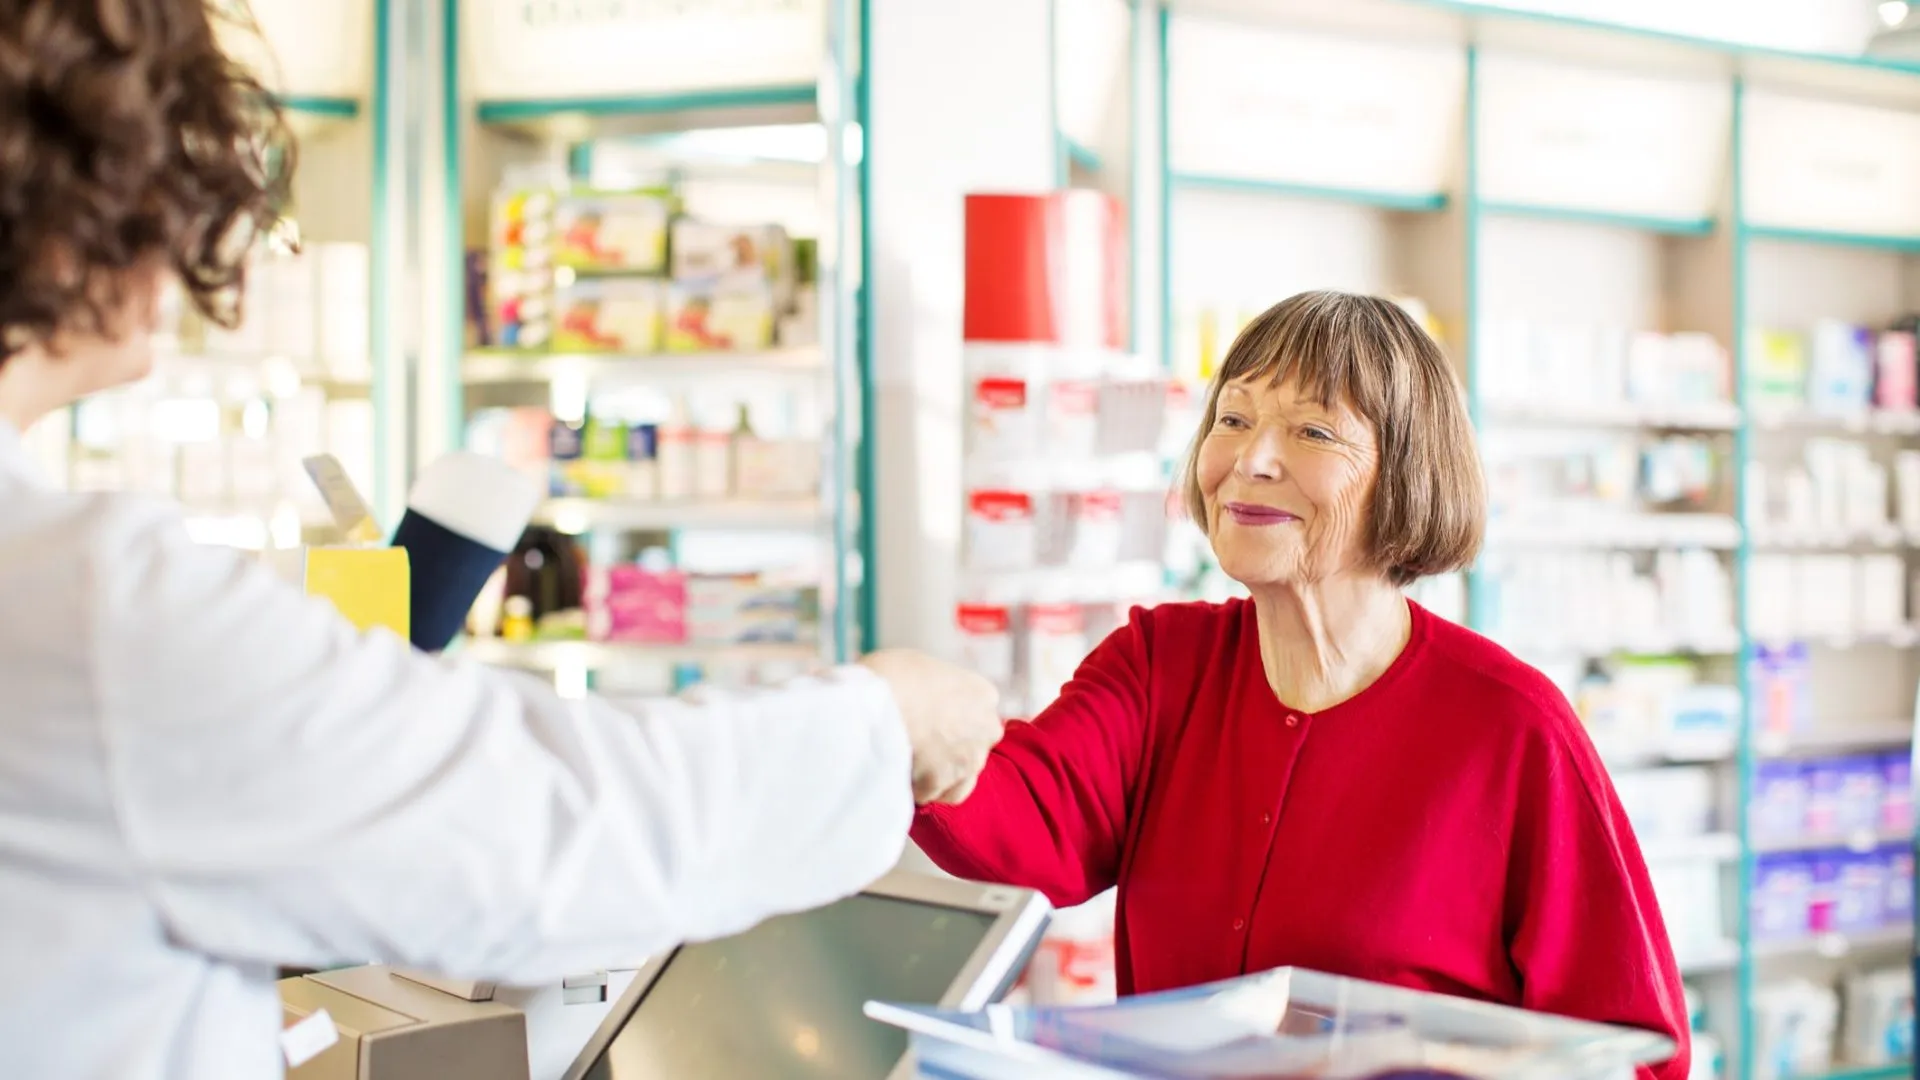 Senior female customer standing at chemist counter as pharmacist hands her medication order.